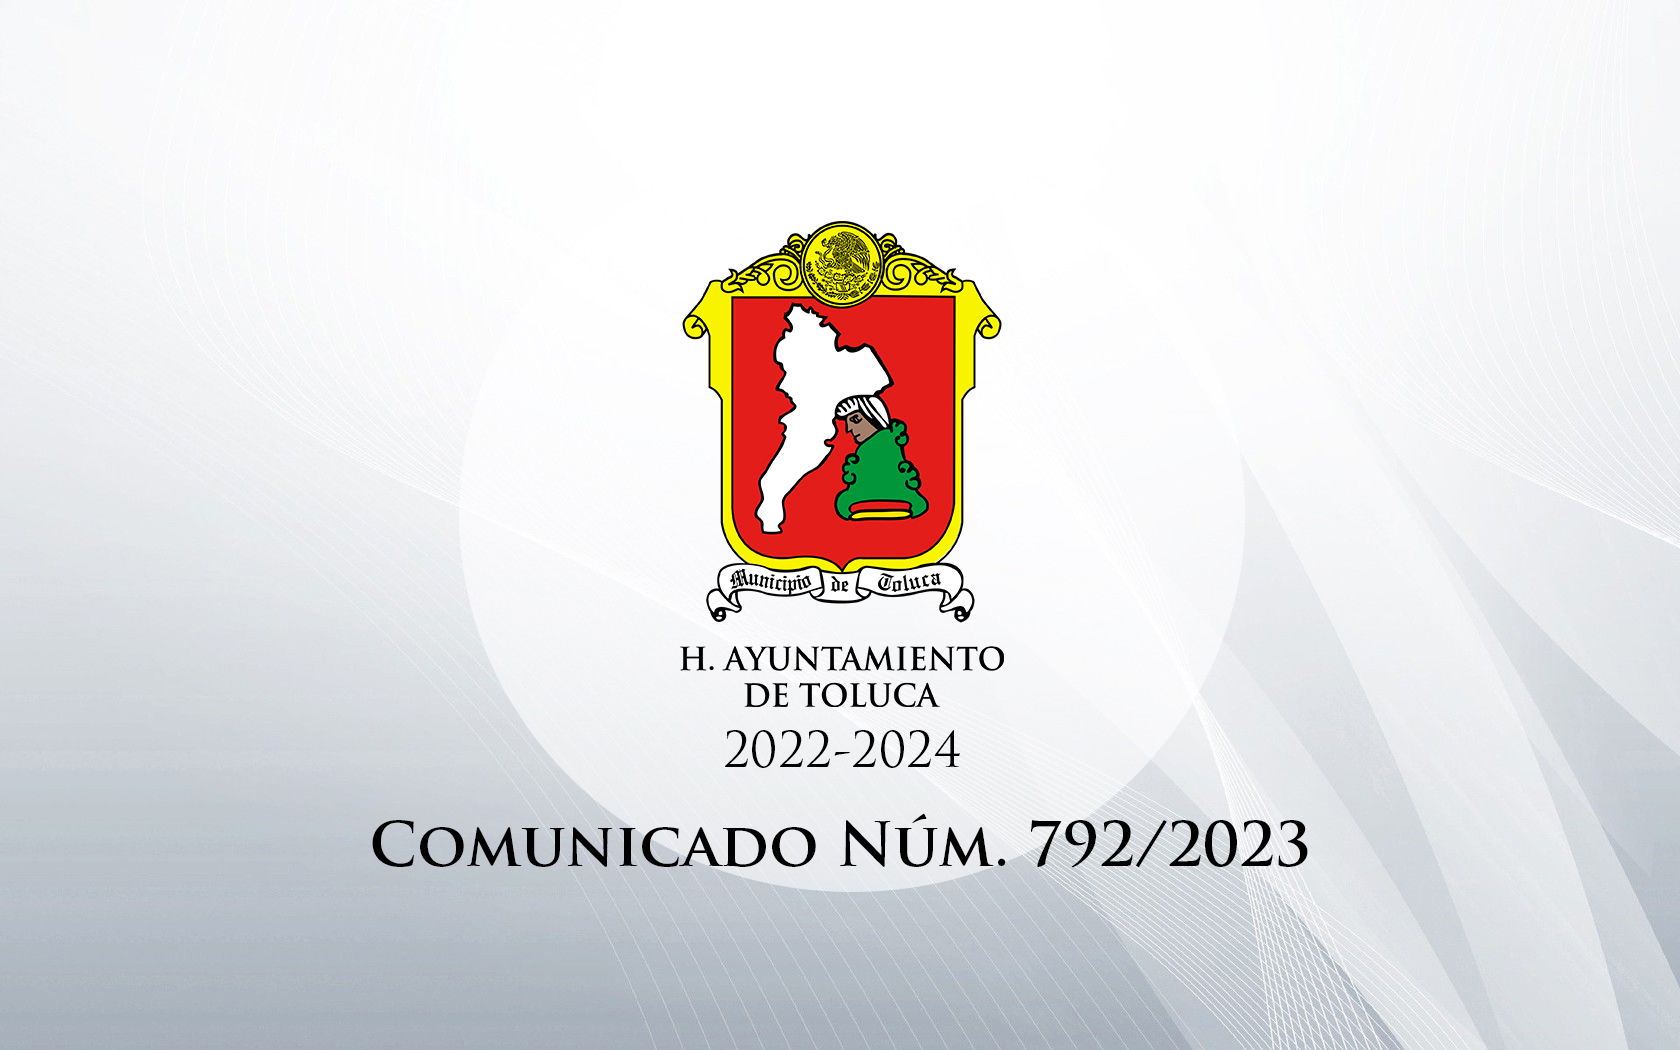 Comunicado Núm. 792/2023